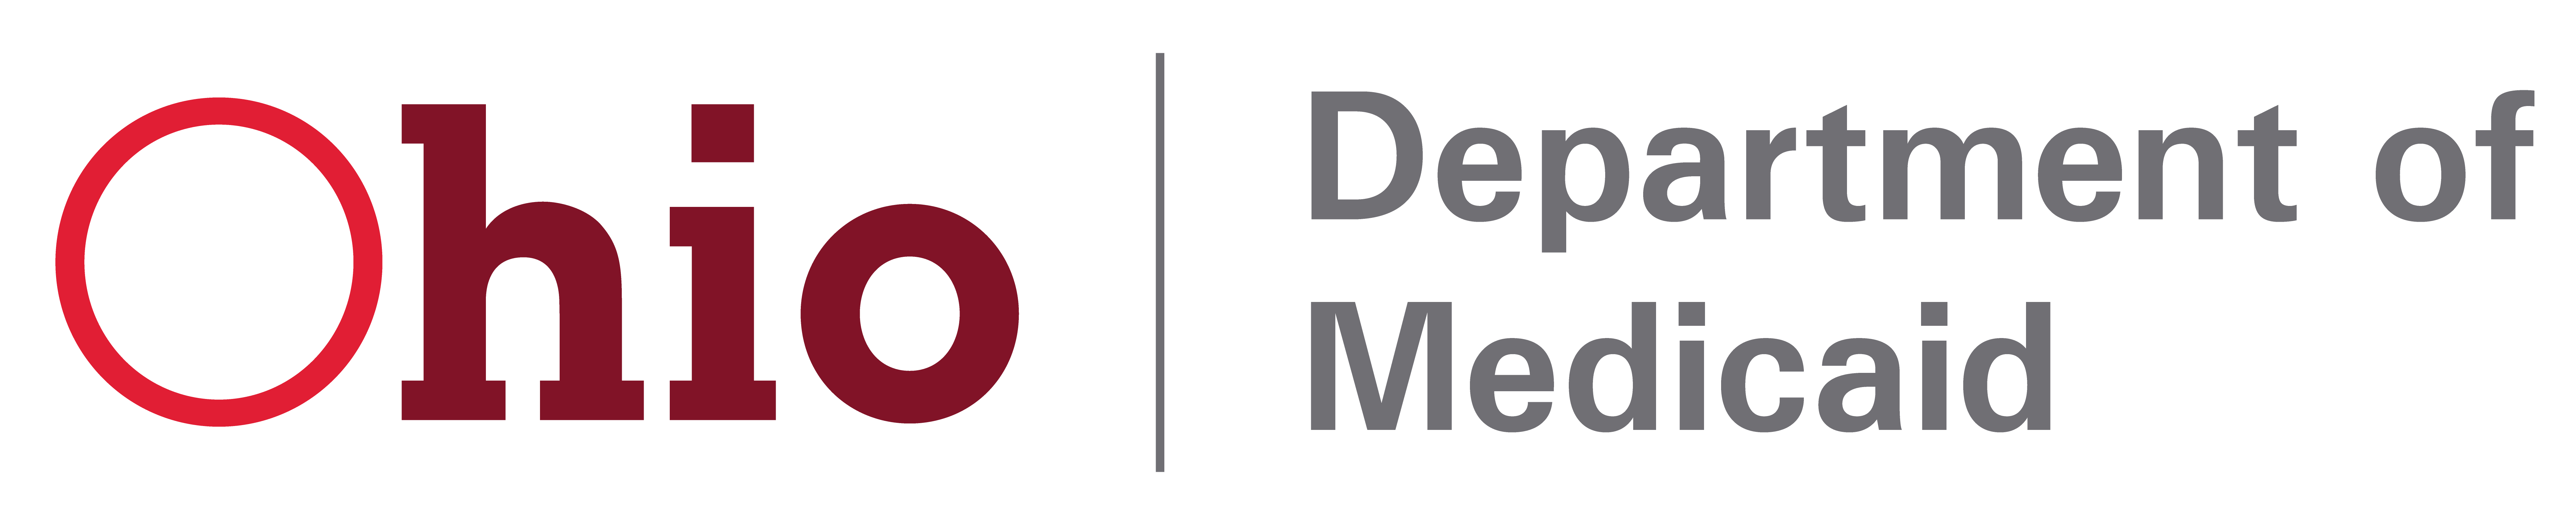 Ohio Department of Medicaid logo